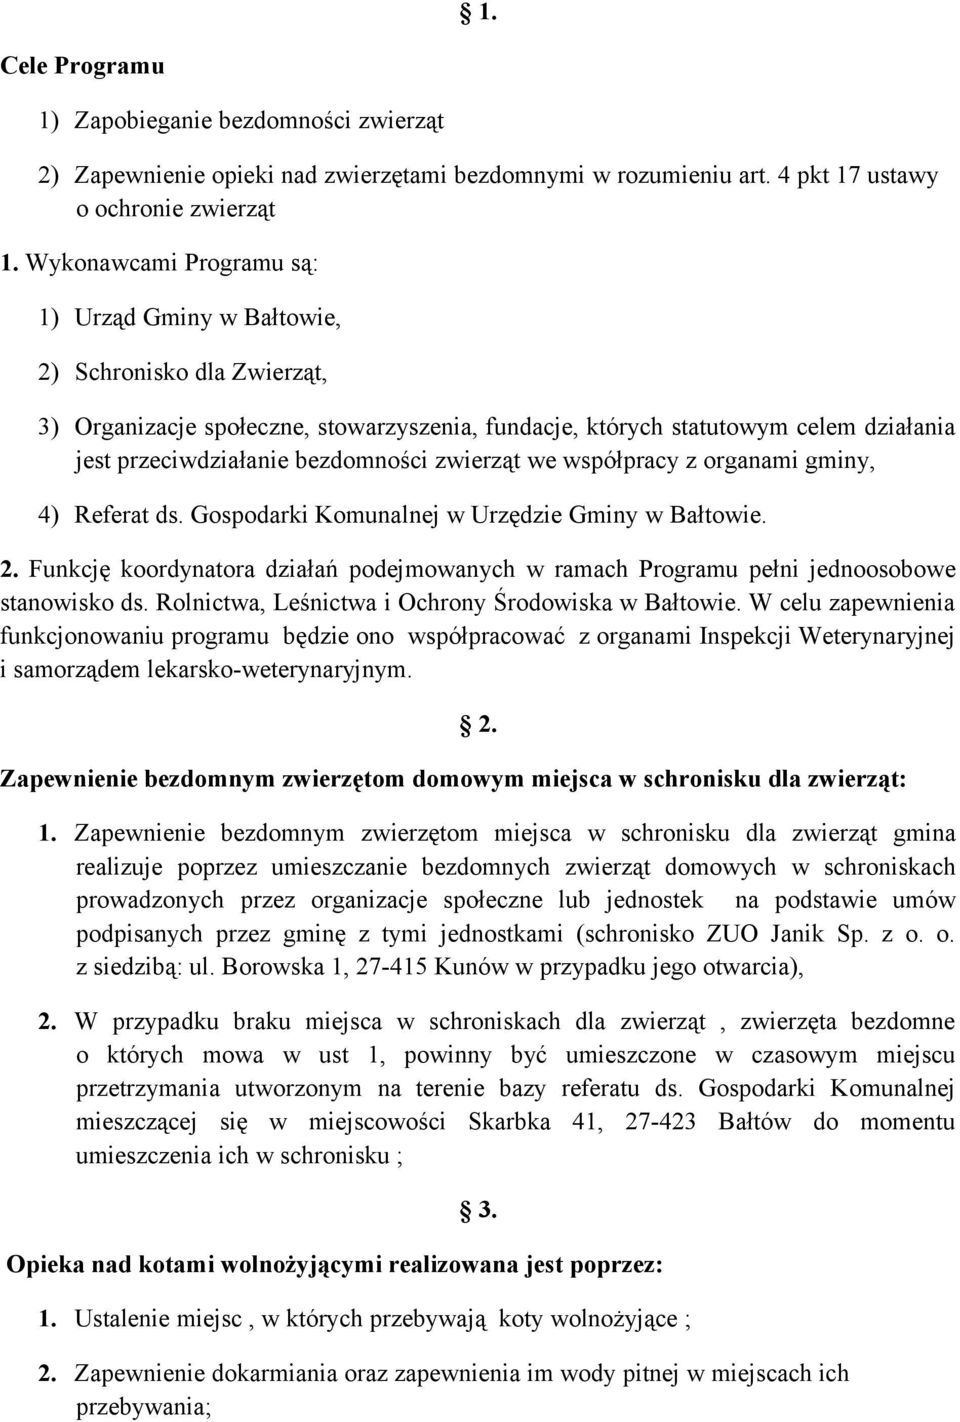 bezdomności zwierząt we współpracy z organami gminy, 4) Referat ds. Gospodarki Komunalnej w Urzędzie Gminy w Bałtowie. 2.